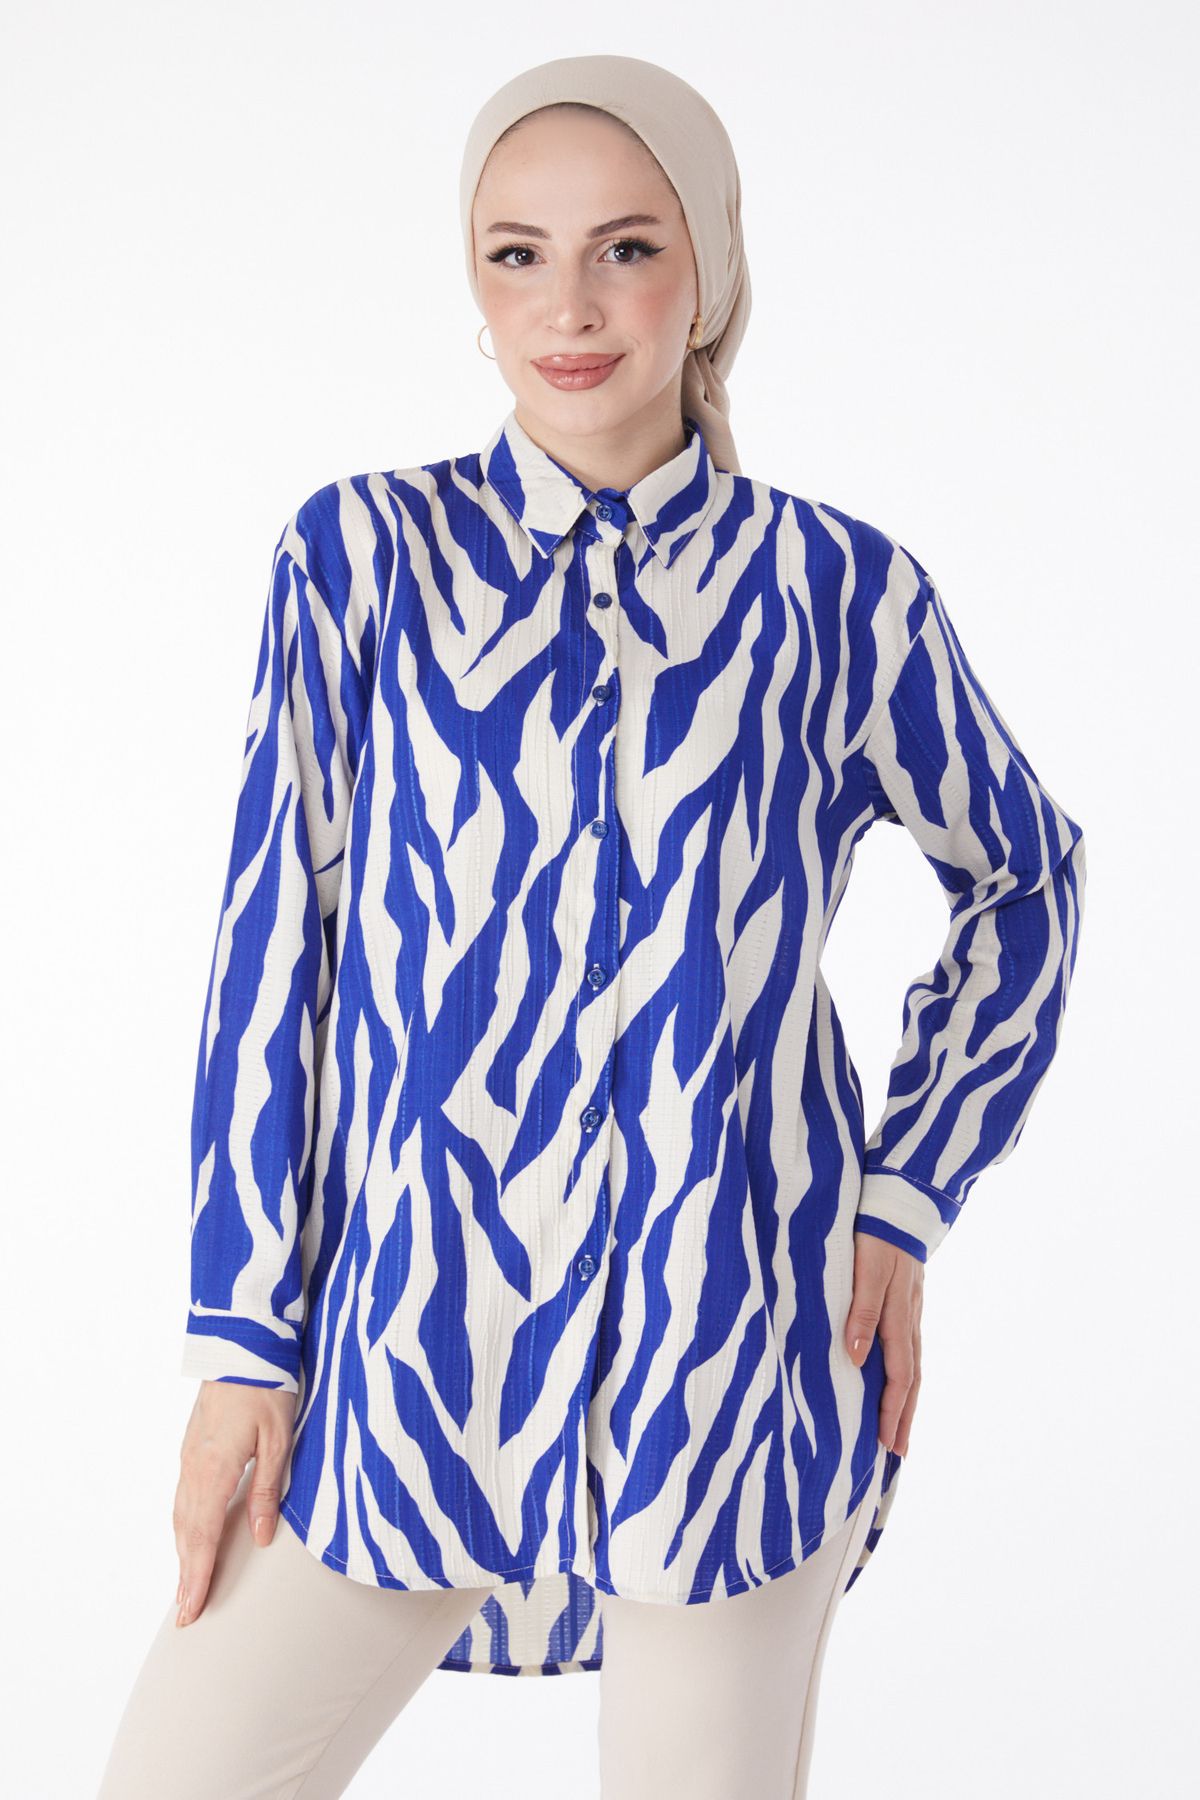 TOFİSA Düz Gömlek Yaka Kadın Mavi Desenli Gömlek - 25051